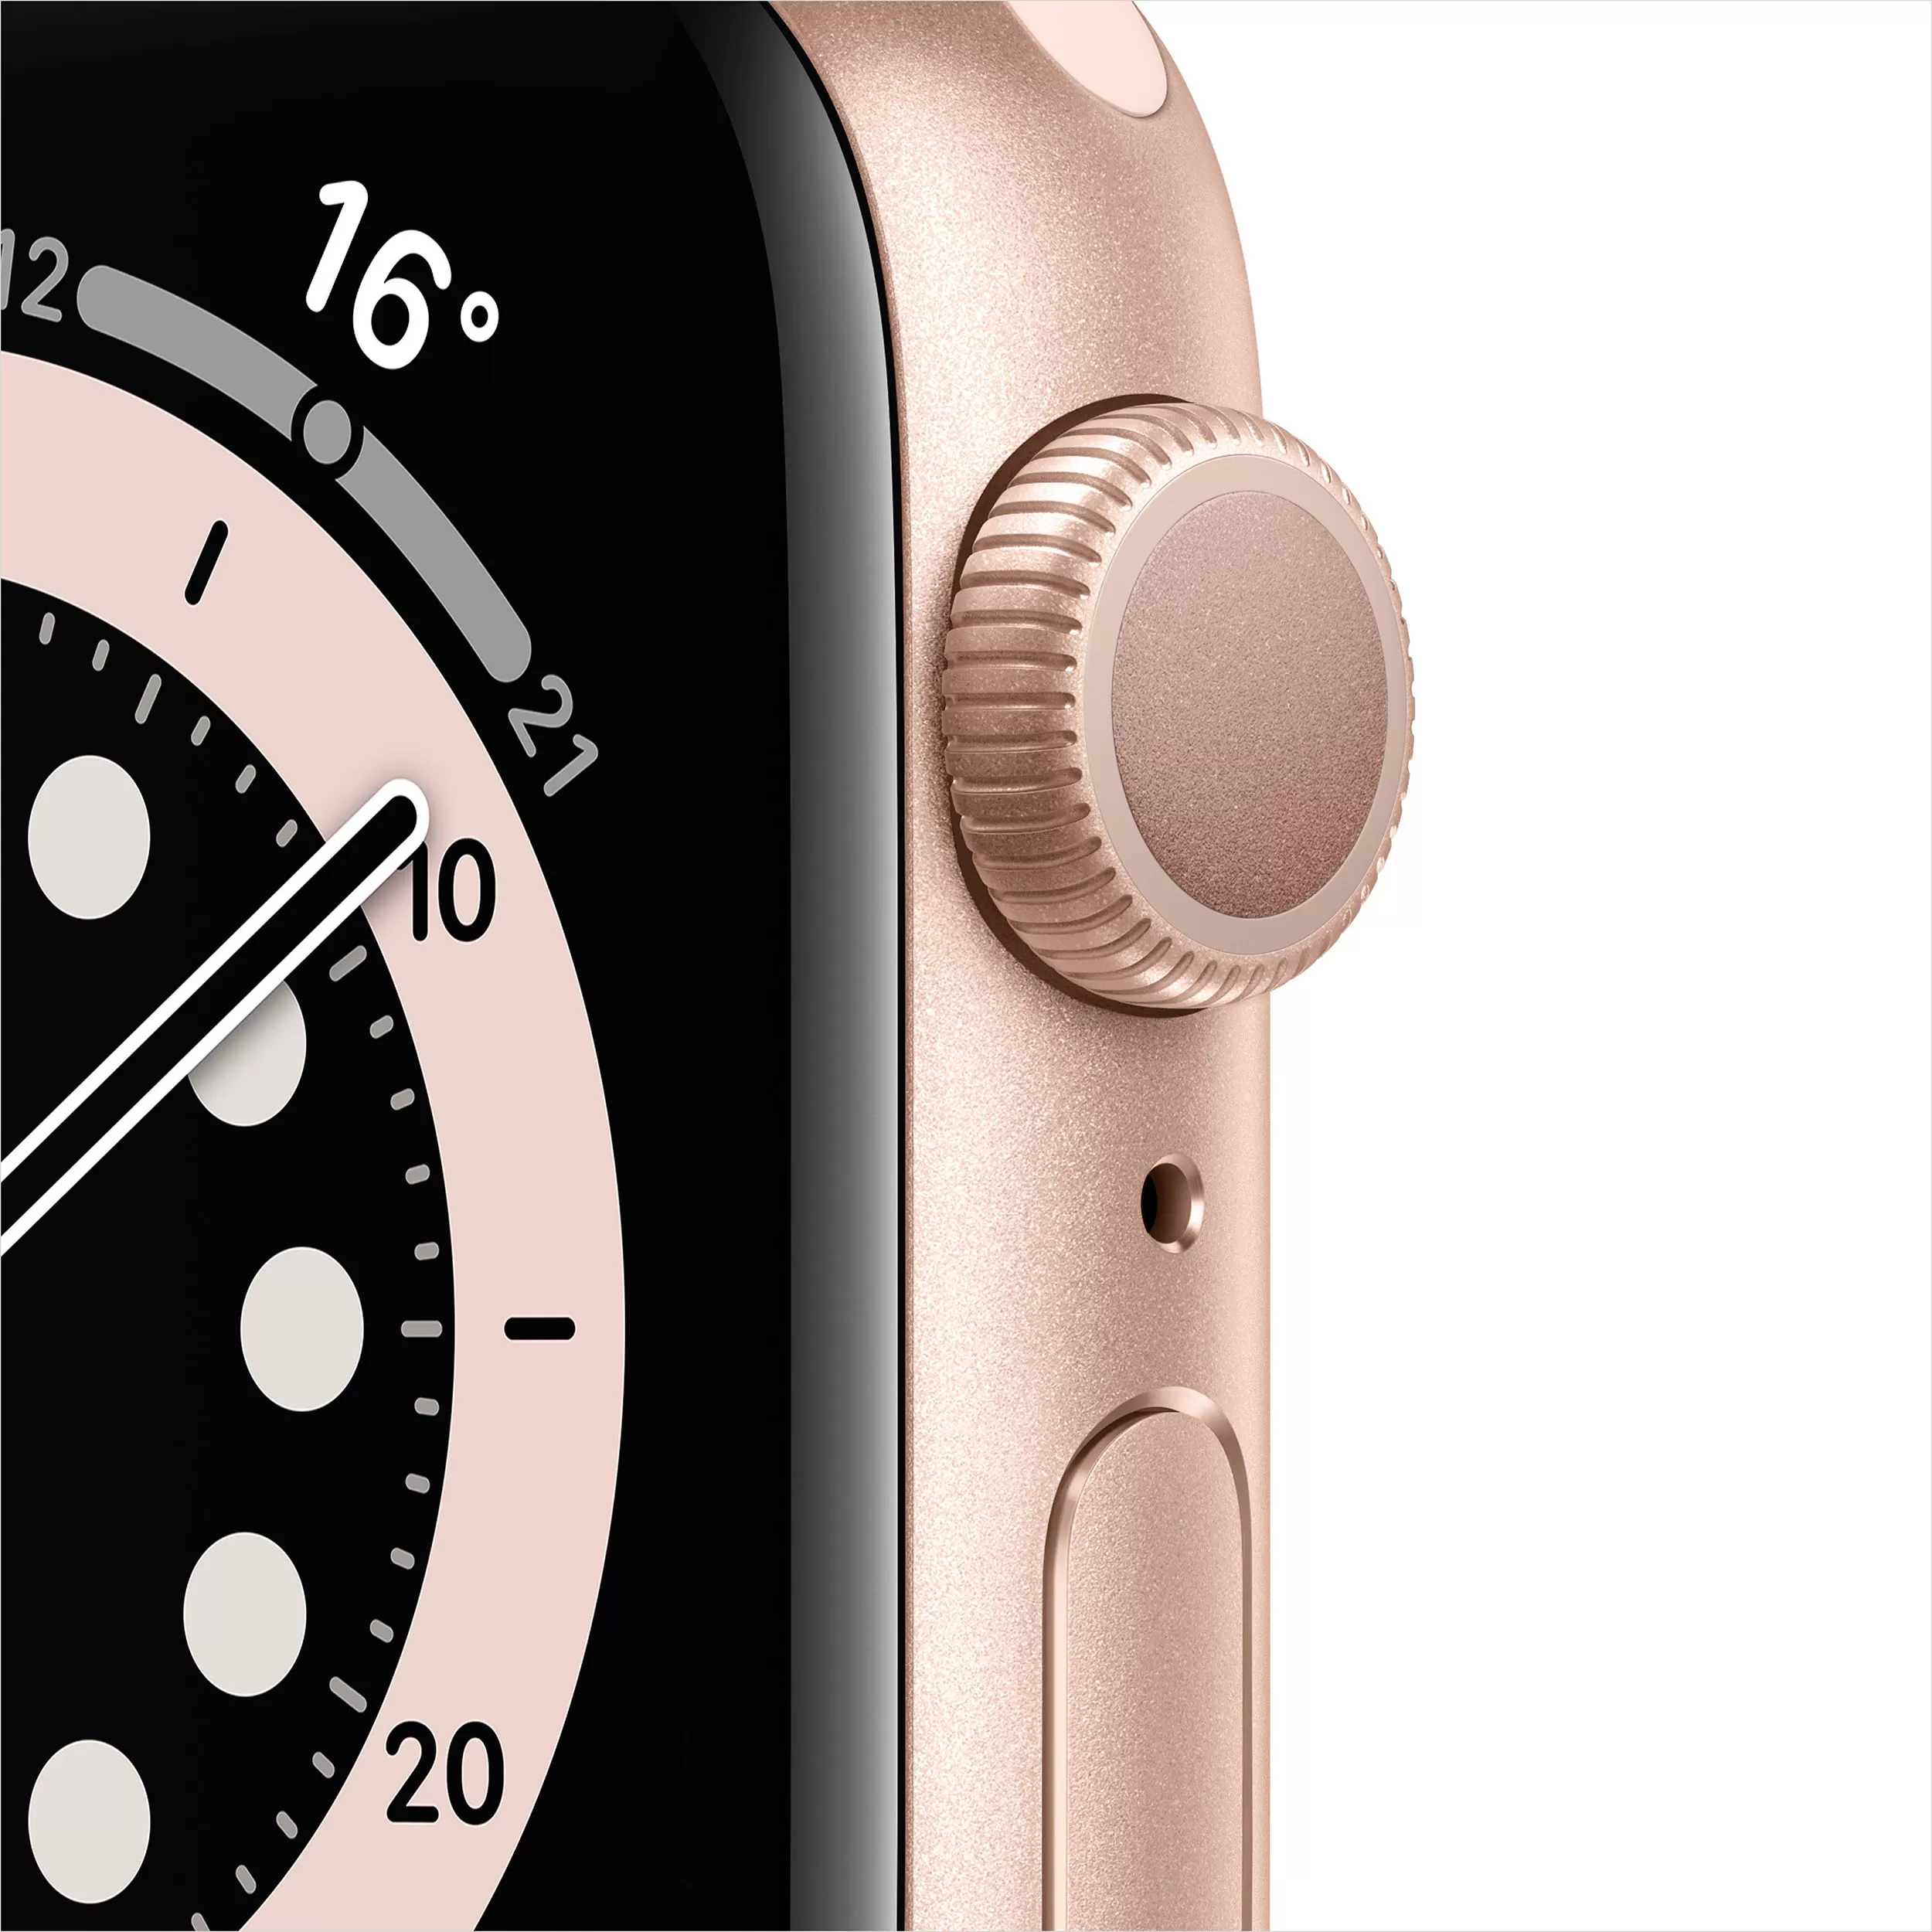 Apple Watch Series 6, 44 мм, корпус из алюминия золотого цвета, спортивный ремешок цвета «розовый песок»